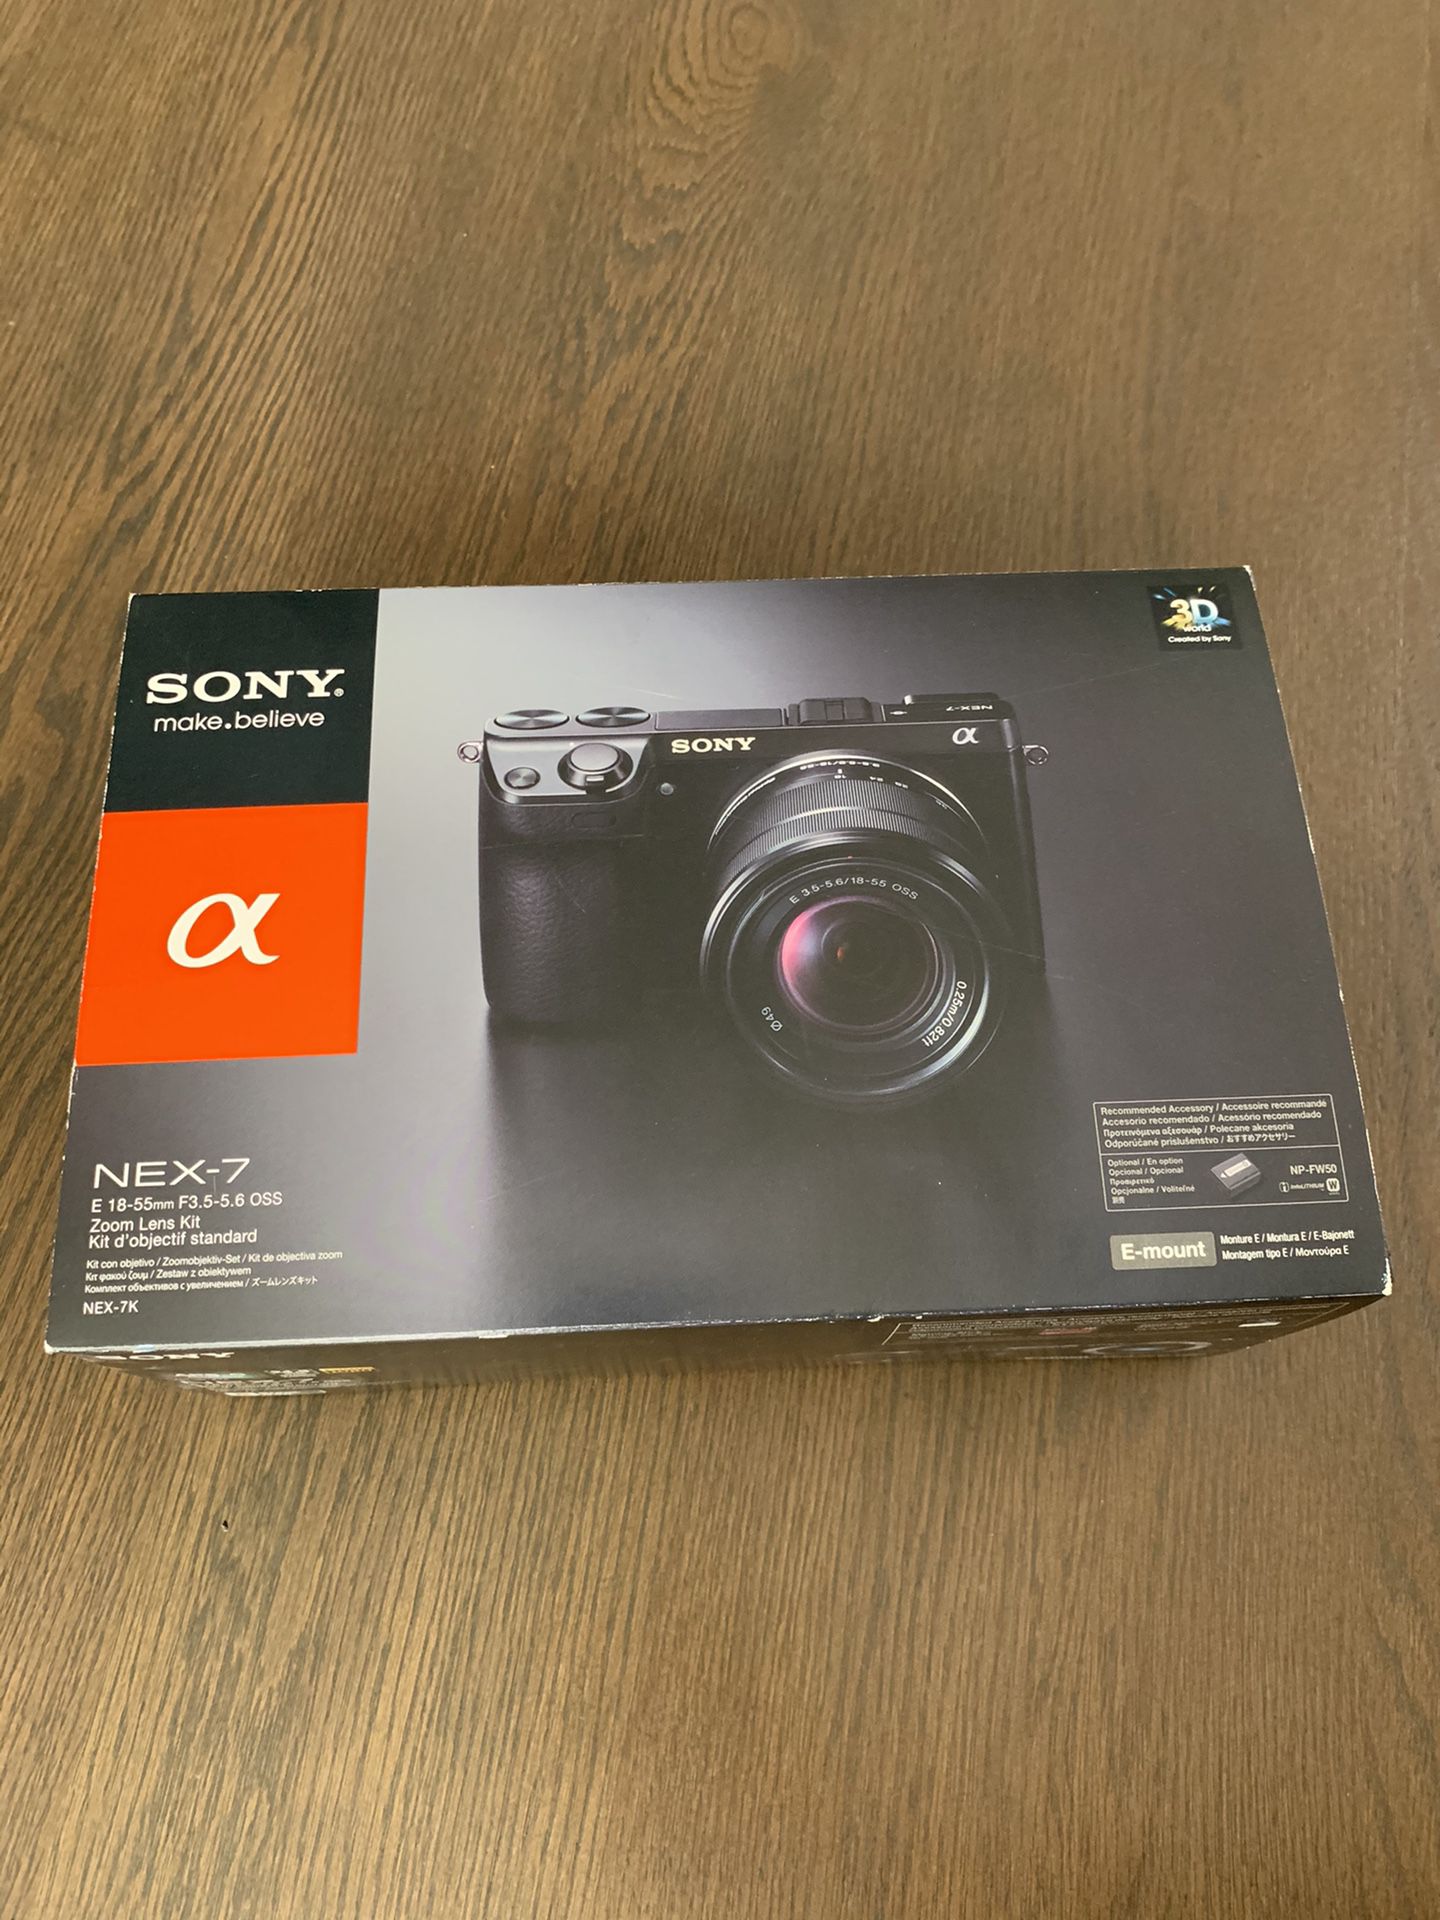 Sony NEX-7 camera body